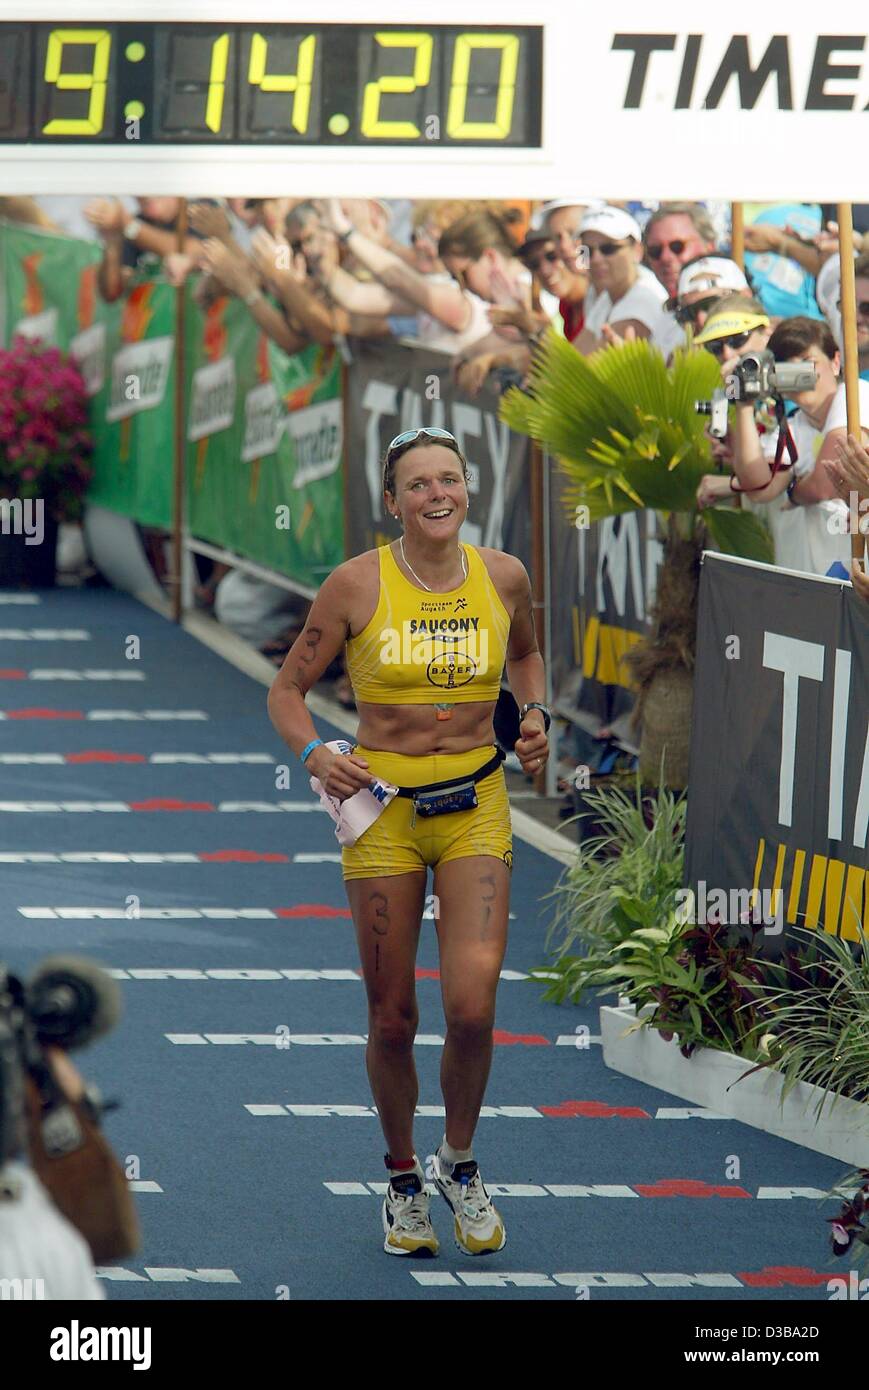 (Dpa) - atleta tedesca Nina Kraft arriva secondo al traguardo della donna Ironman Triathlon World Championship in Kailua-Kona, Hawaii, 19 ottobre 2002. Kraft ha completato il corso di 3.8 km di nuoto, 180 km in bicicletta e una maratona in 9 ore, 14 minuti e 24 secondi. Foto Stock